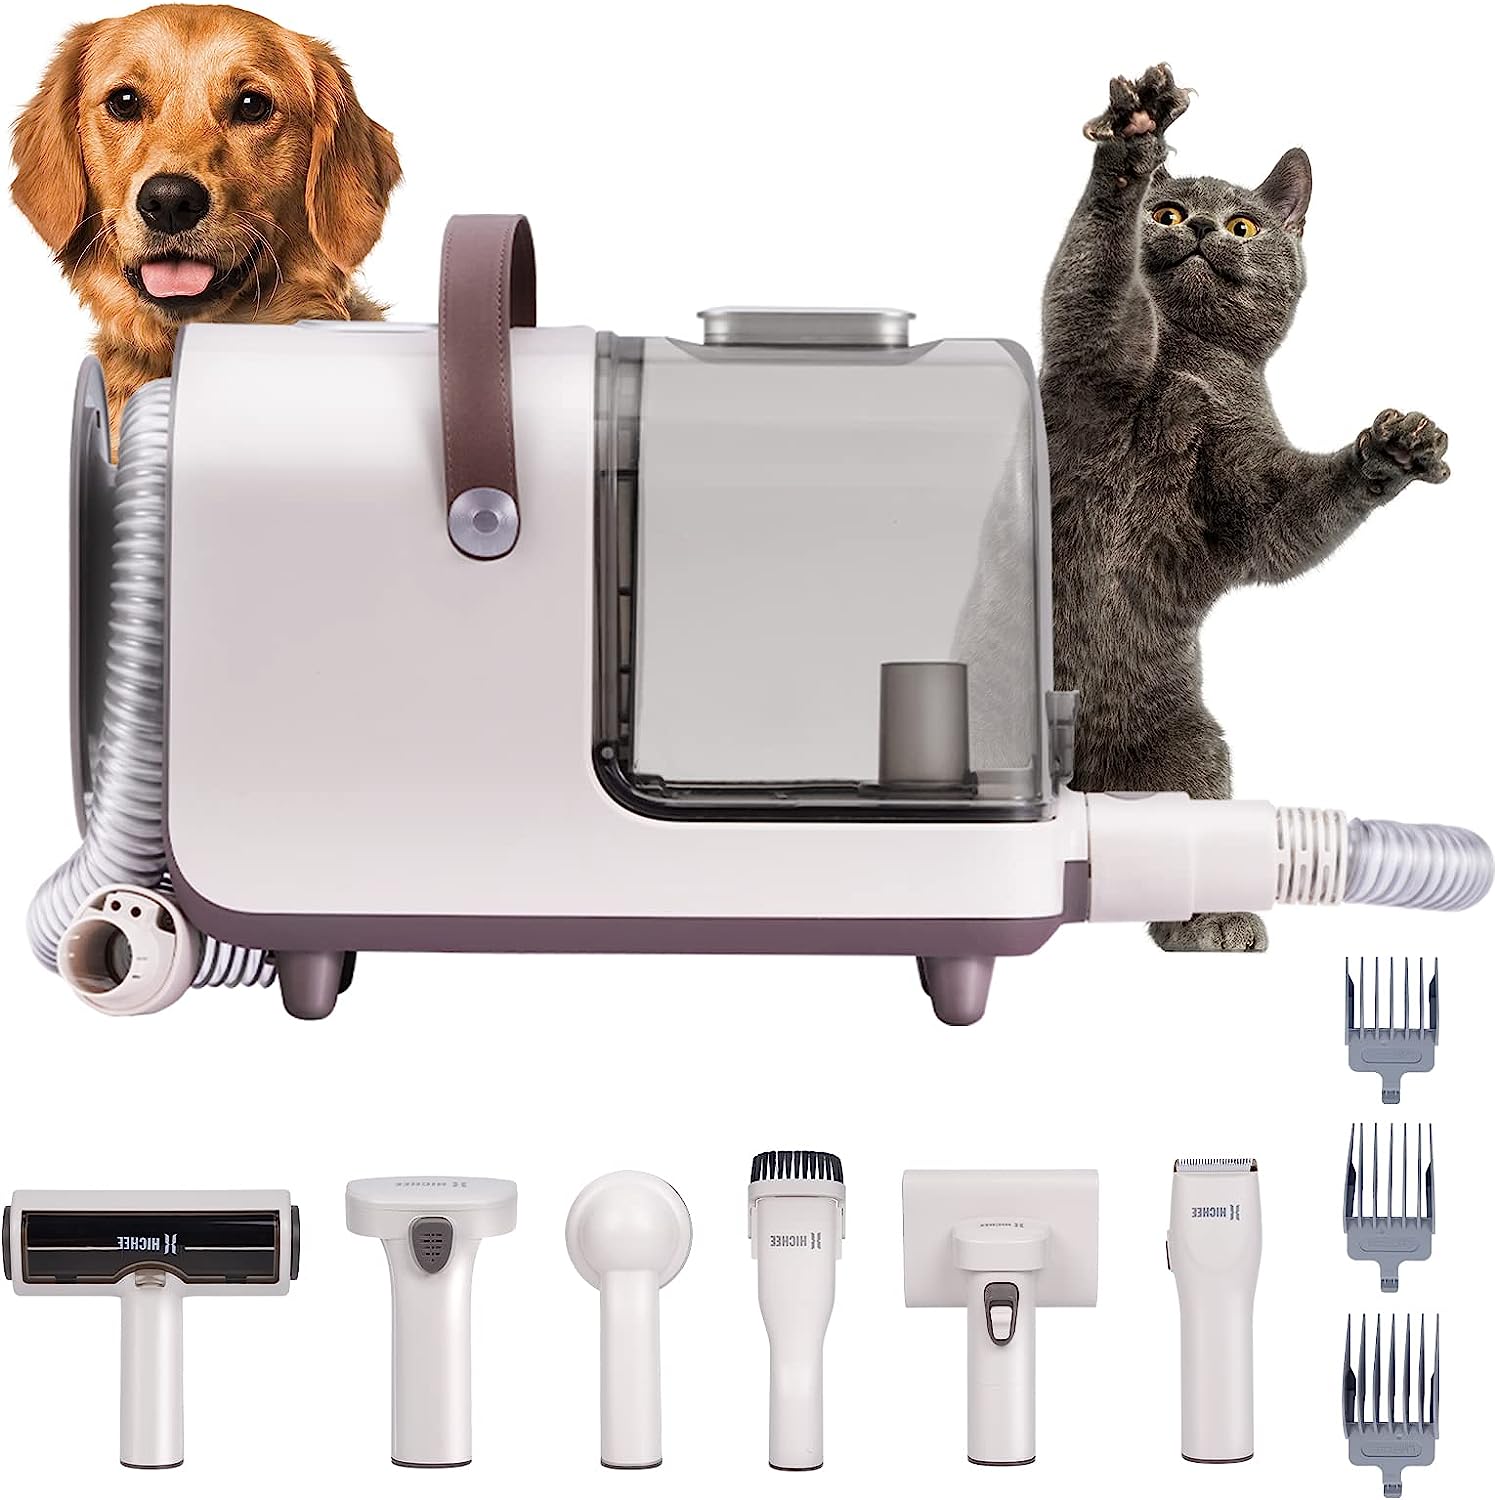 Bild zu HICHEE Hundeschermaschine mit Staubsauger, Hundbürste und Tierhaarstaubsauger für 109,99€